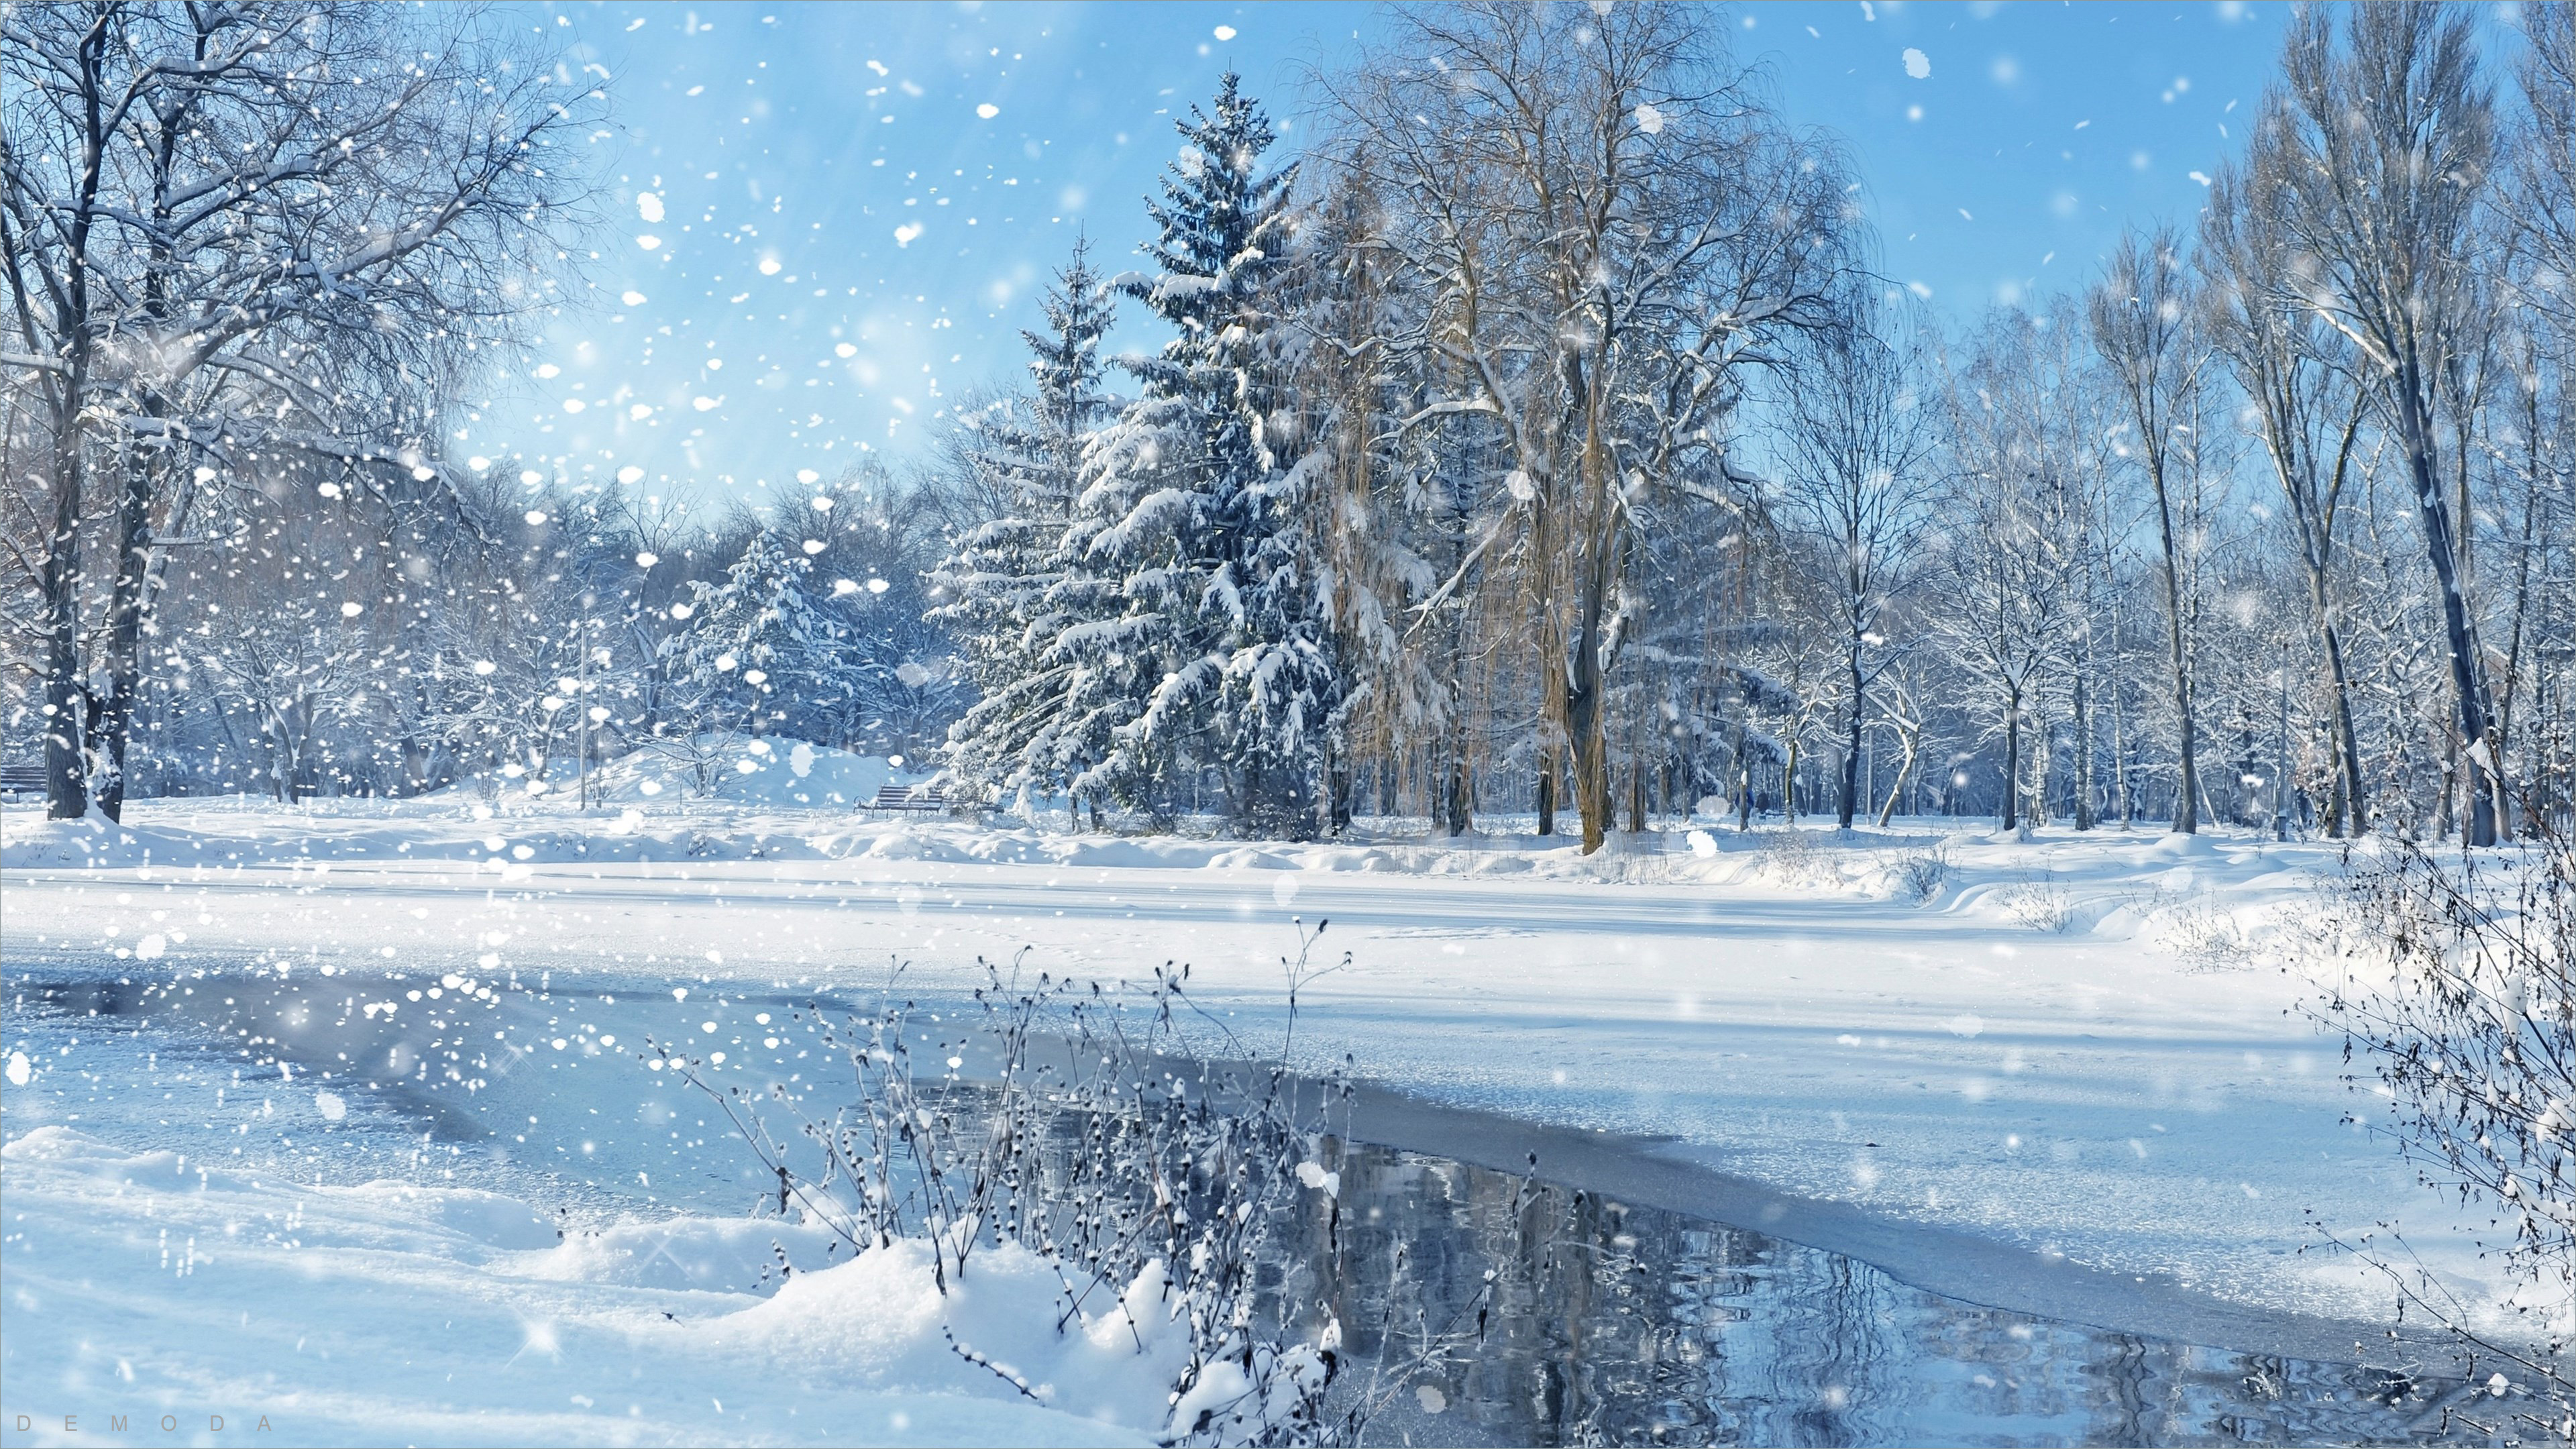 Không gì tuyệt vời hơn khi được ngắm những phong cảnh tuyết rơi đẹp và lãng mạn. Với những cảnh tượng đáng ngưỡng mộ, bạn sẽ bị cuốn hút bởi vẻ đẹp thần tiên của thiên nhiên tuyết rơi. Hãy tận hưởng và lưu giữ khoảnh khắc trọn vẹn trong ảnh.